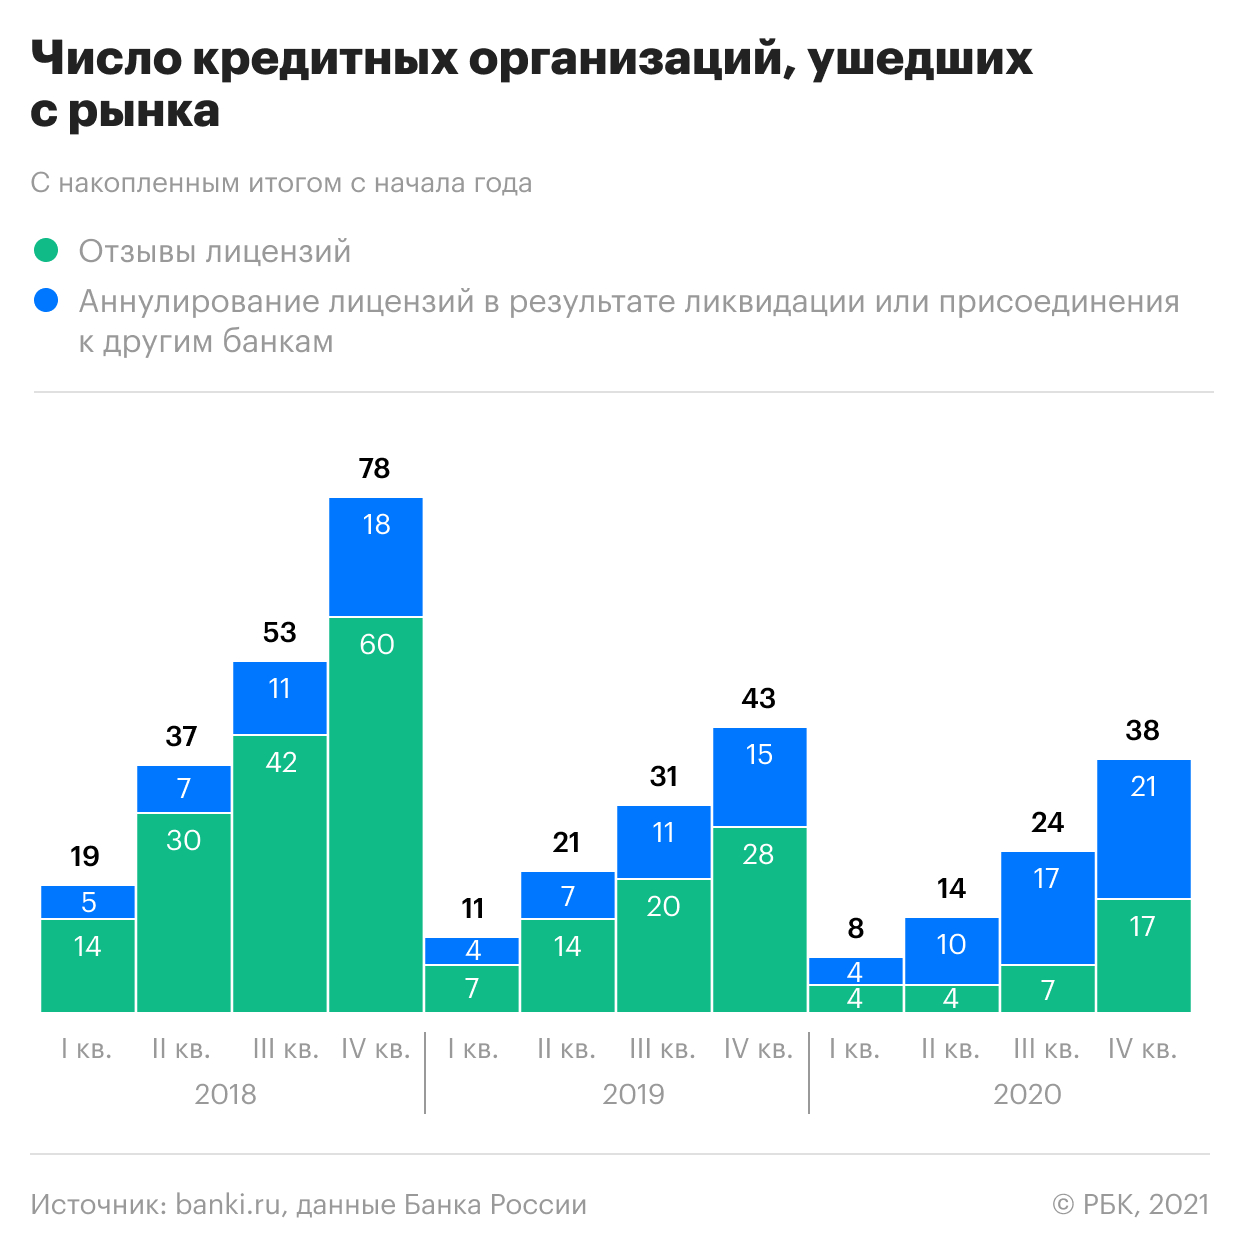 После года пандемии эксперты спрогнозировали дефолт 33 российских банков